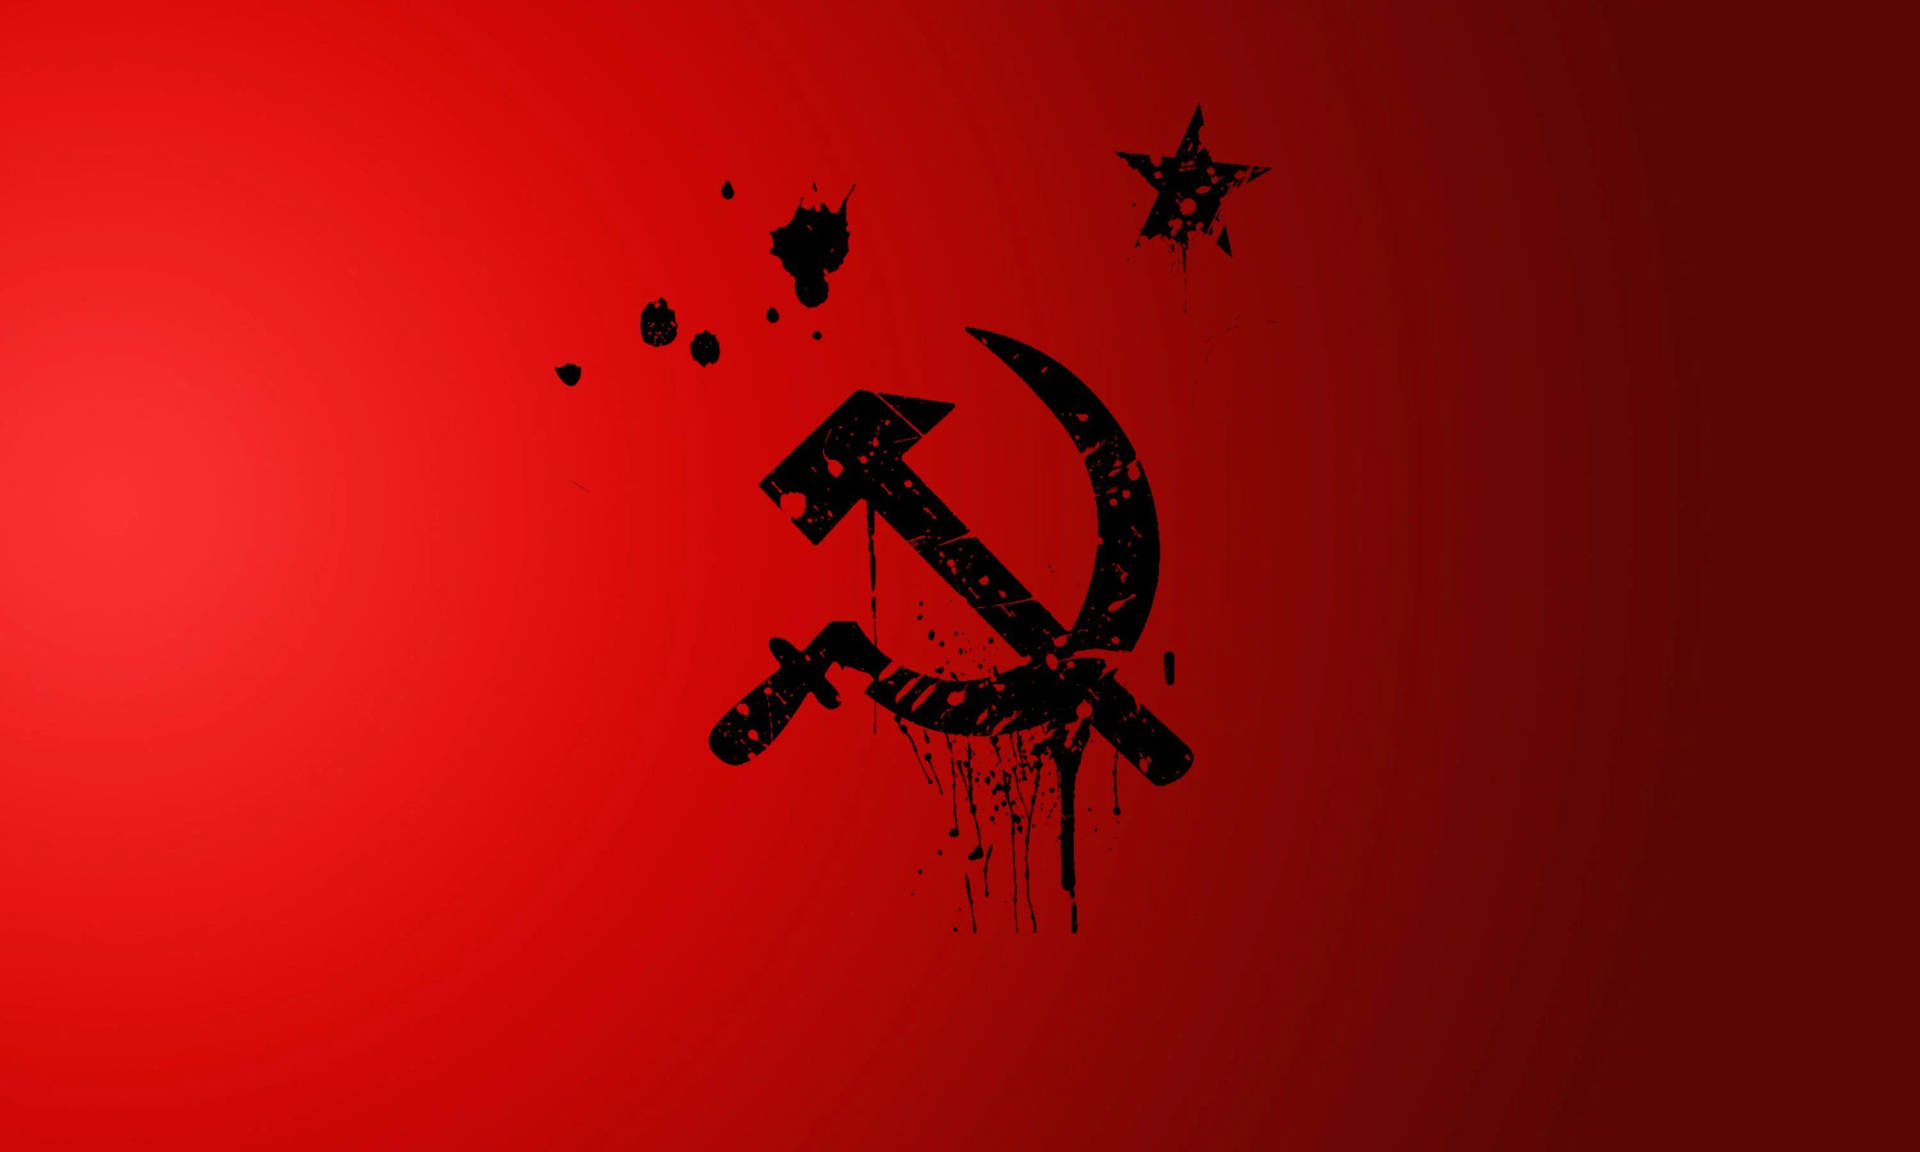 Sovjetunionensflagga I Svart Målning. Wallpaper